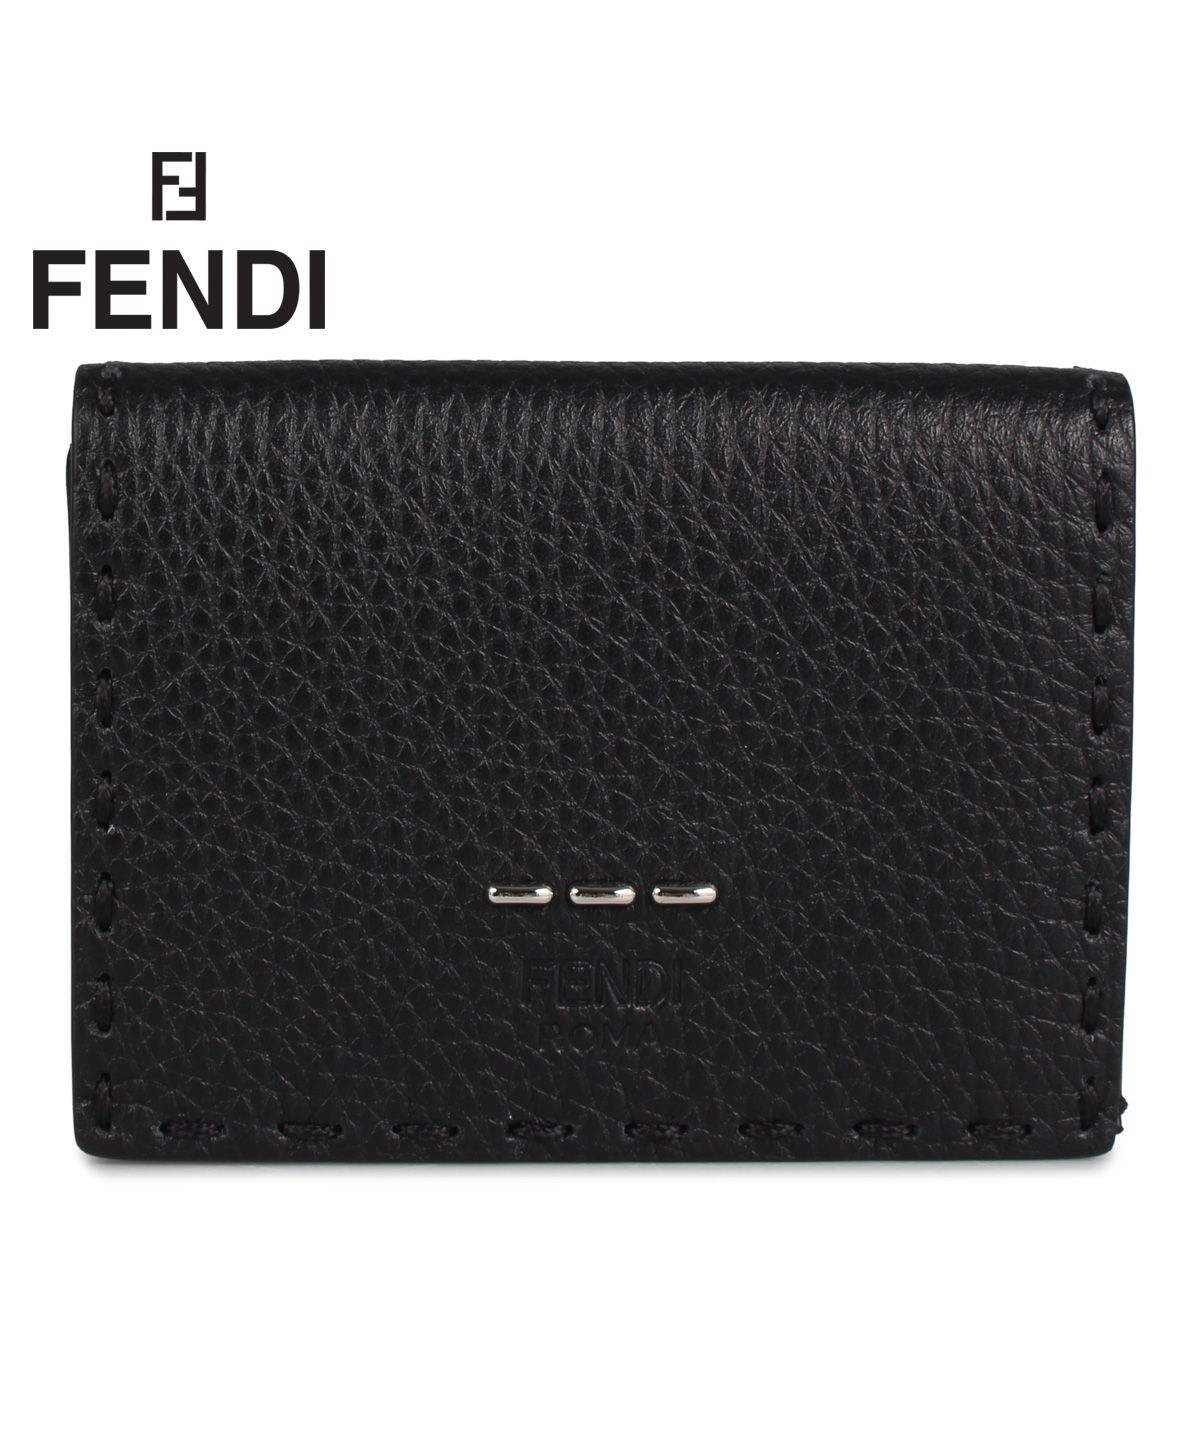 フェンディ FENDI 財布 三つ折り メンズ レディース イタリア製